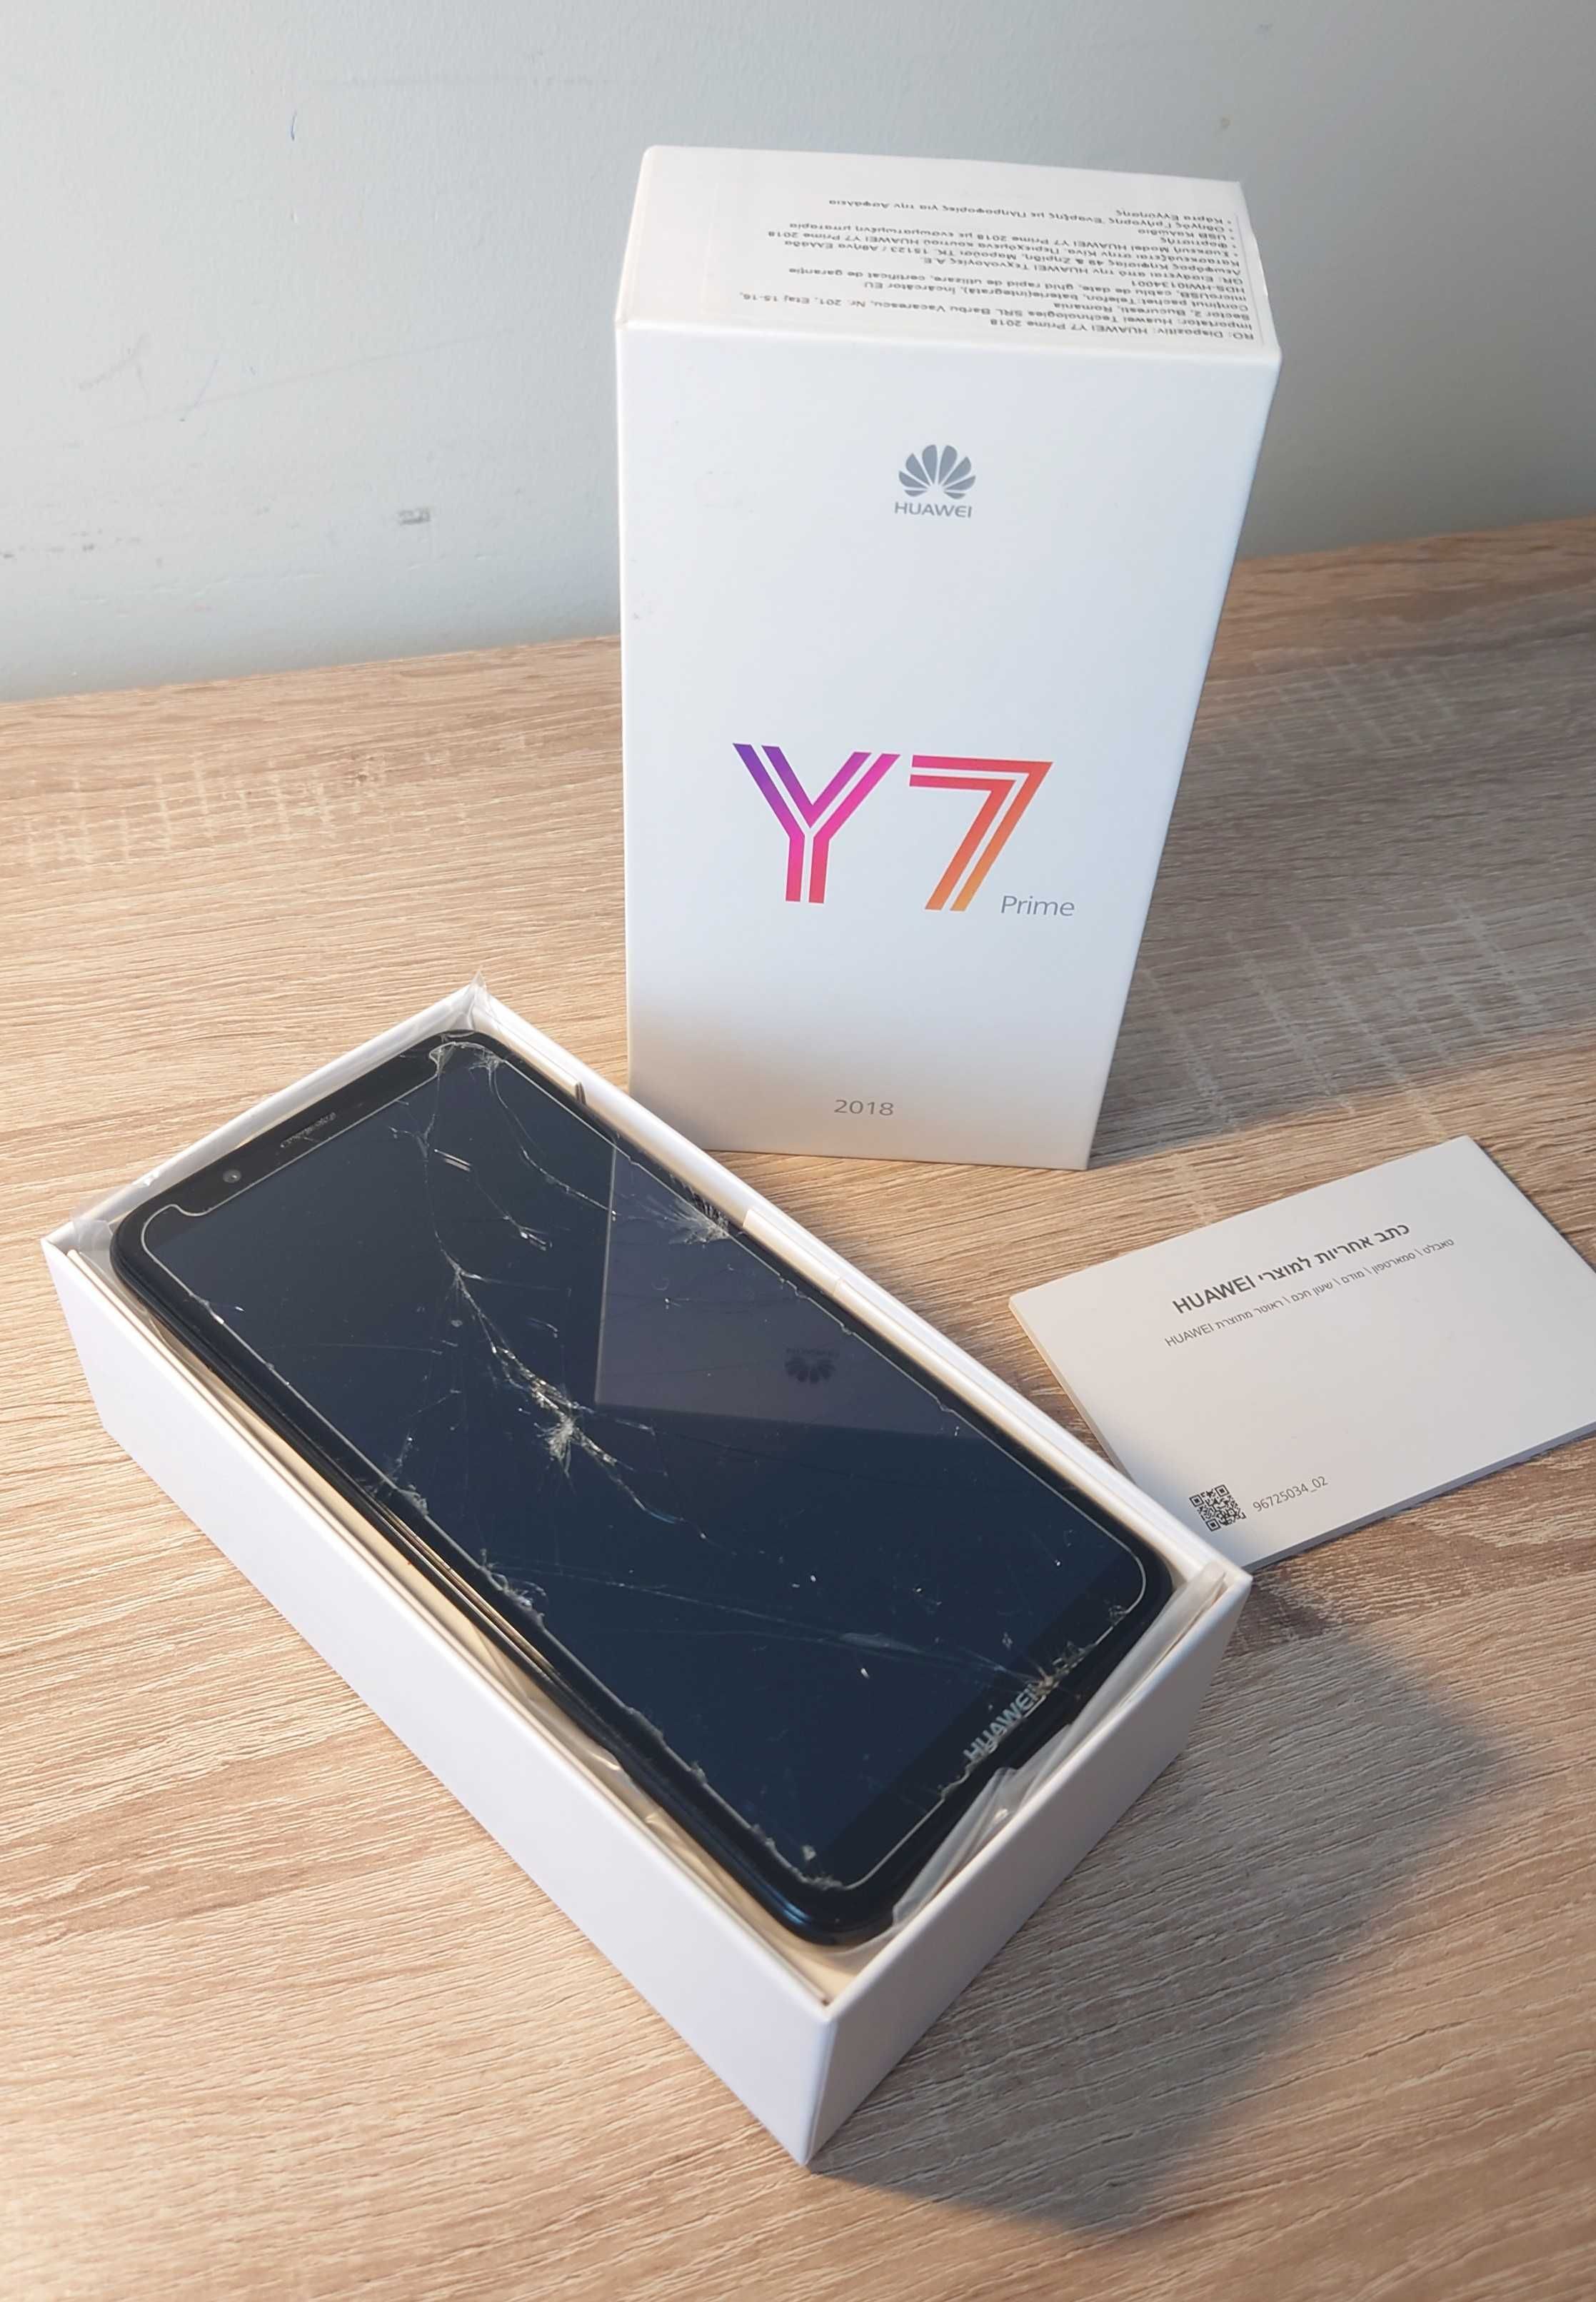 Smartfon HUAWEI Y7 PRIME 2018, uszkodzony wyświetlacz, czarny.